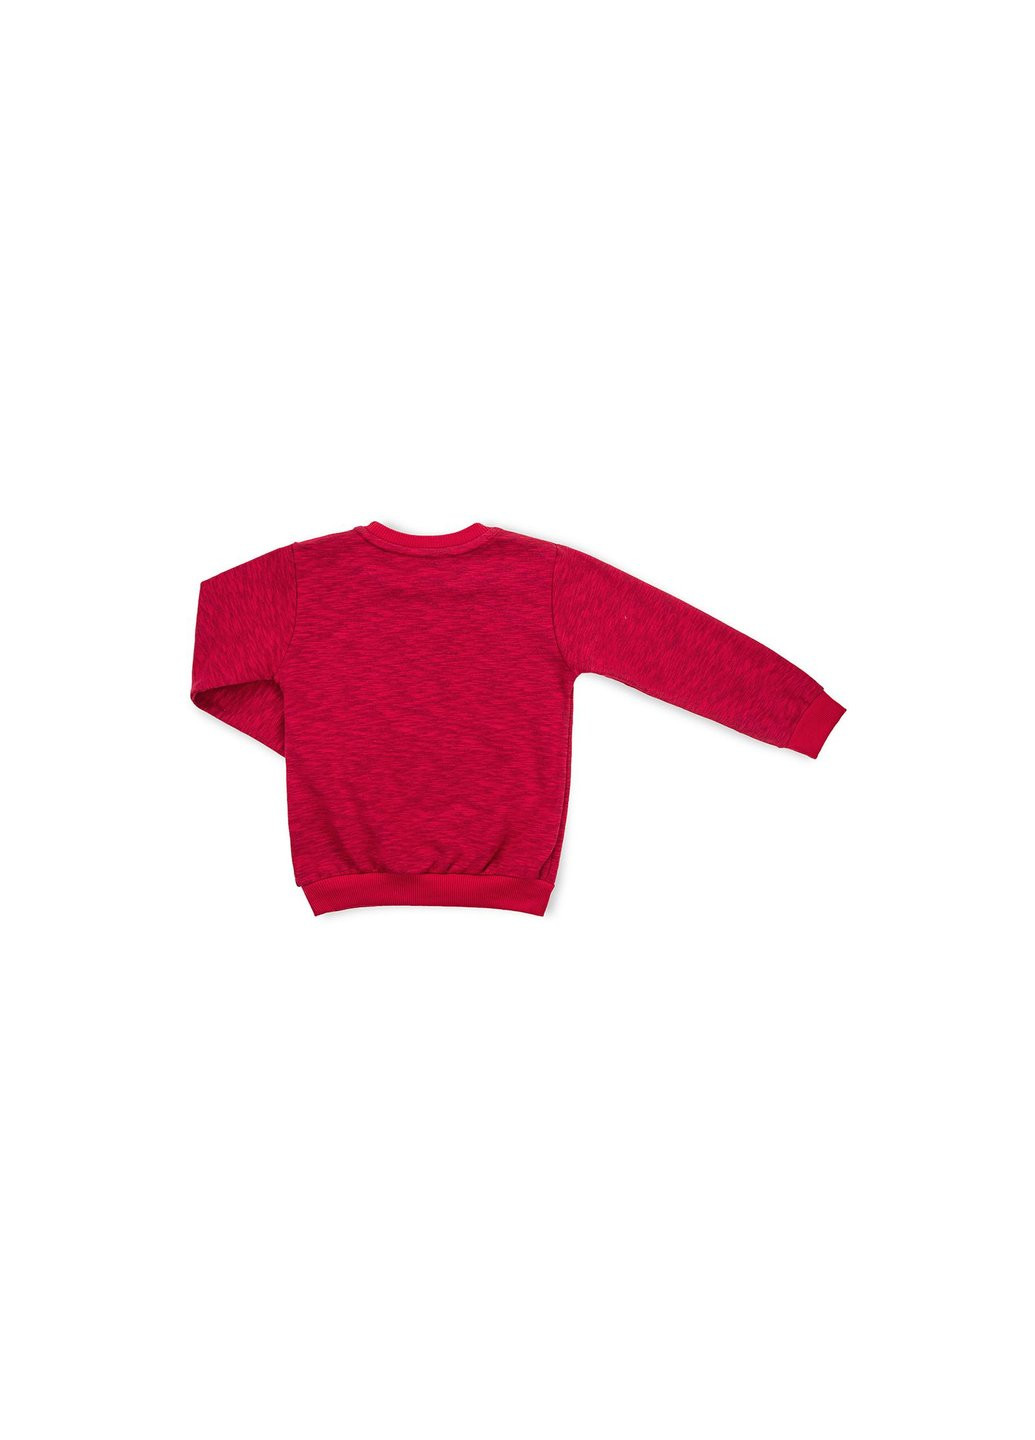 Червоний демісезонний набір дитячого одягу "basket ball" (11378-116b-red) Breeze